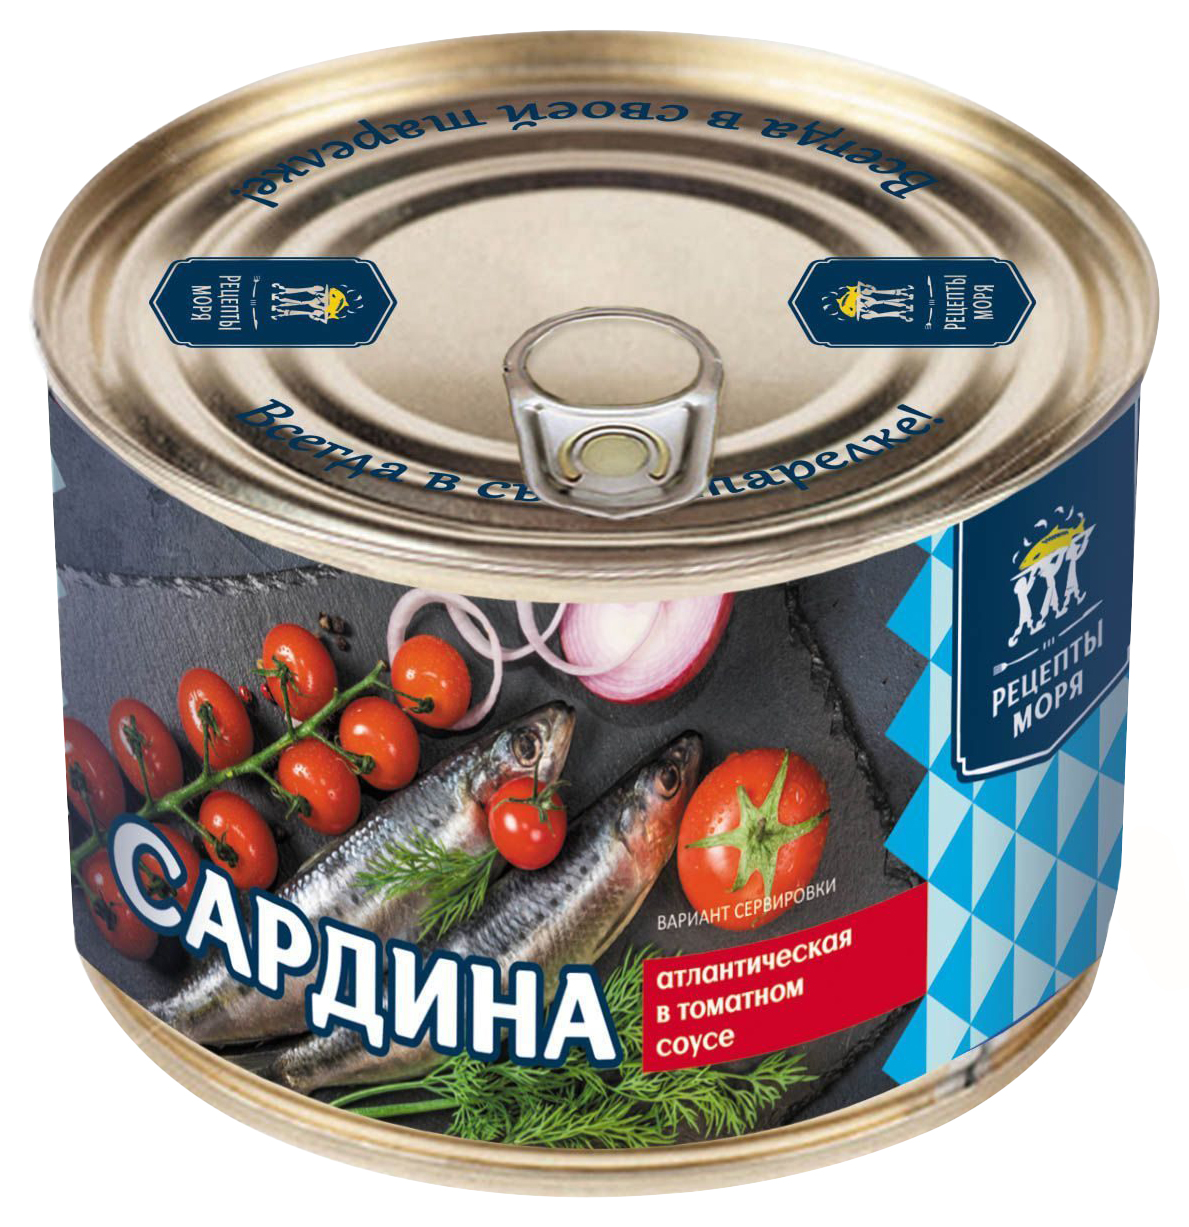 Сардина Рецепты моря атлантическая в томатном соусе 240 г